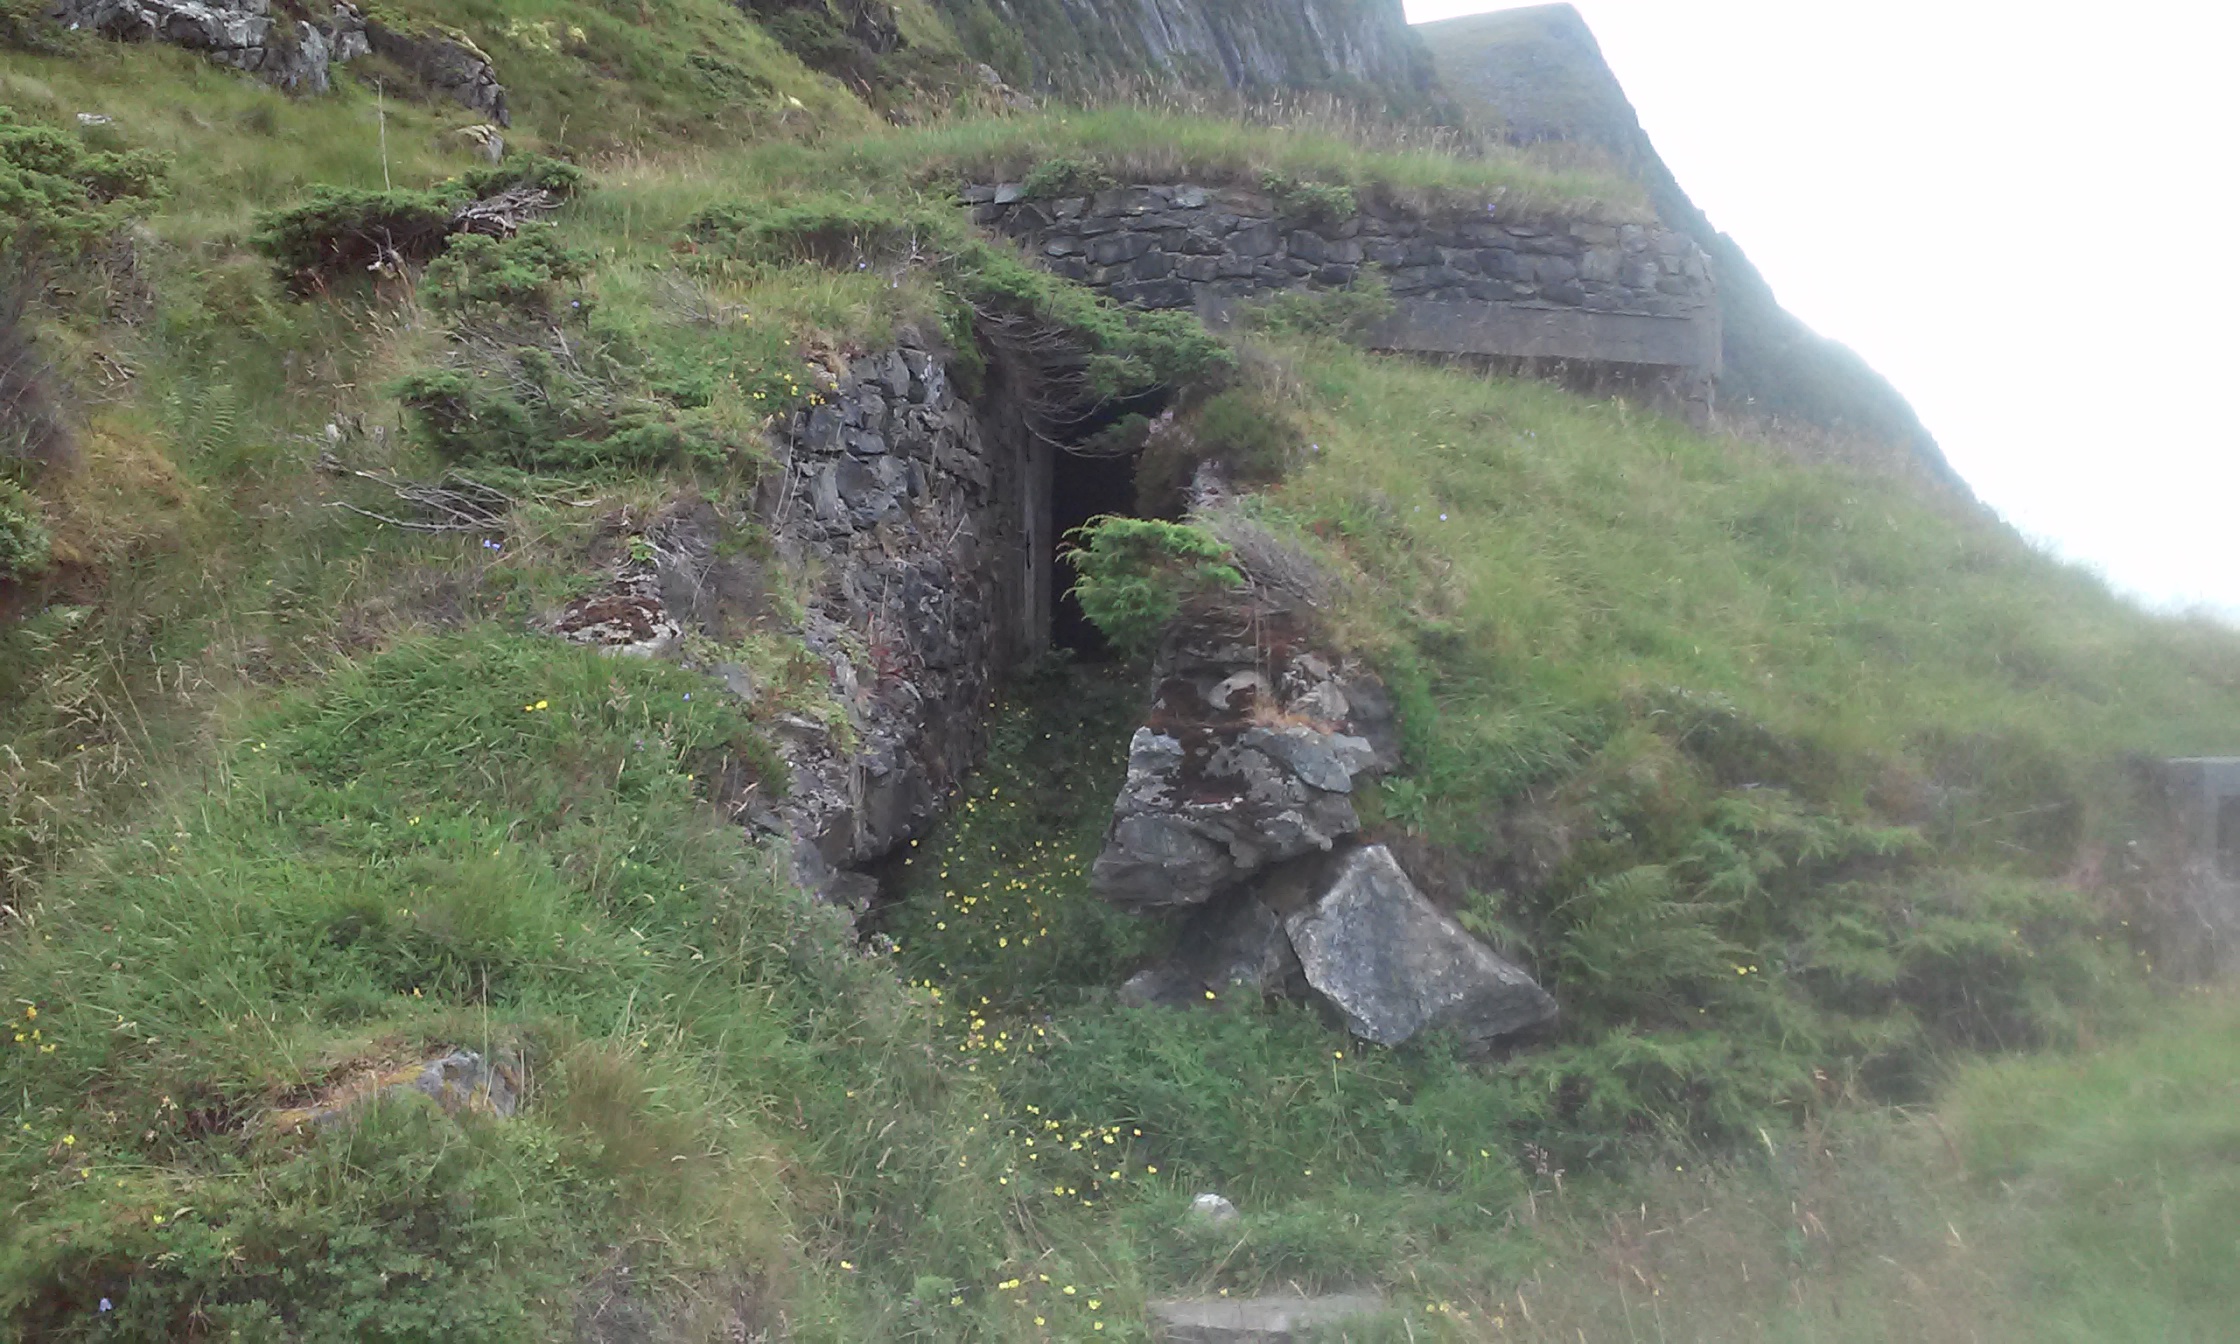 Løpegrav deler seg i 3 mot bunker, til venstre ender i noe sammenrast bak, midt går inn i bunker, høyre fortsetter rundt med stillinger foran bunker.